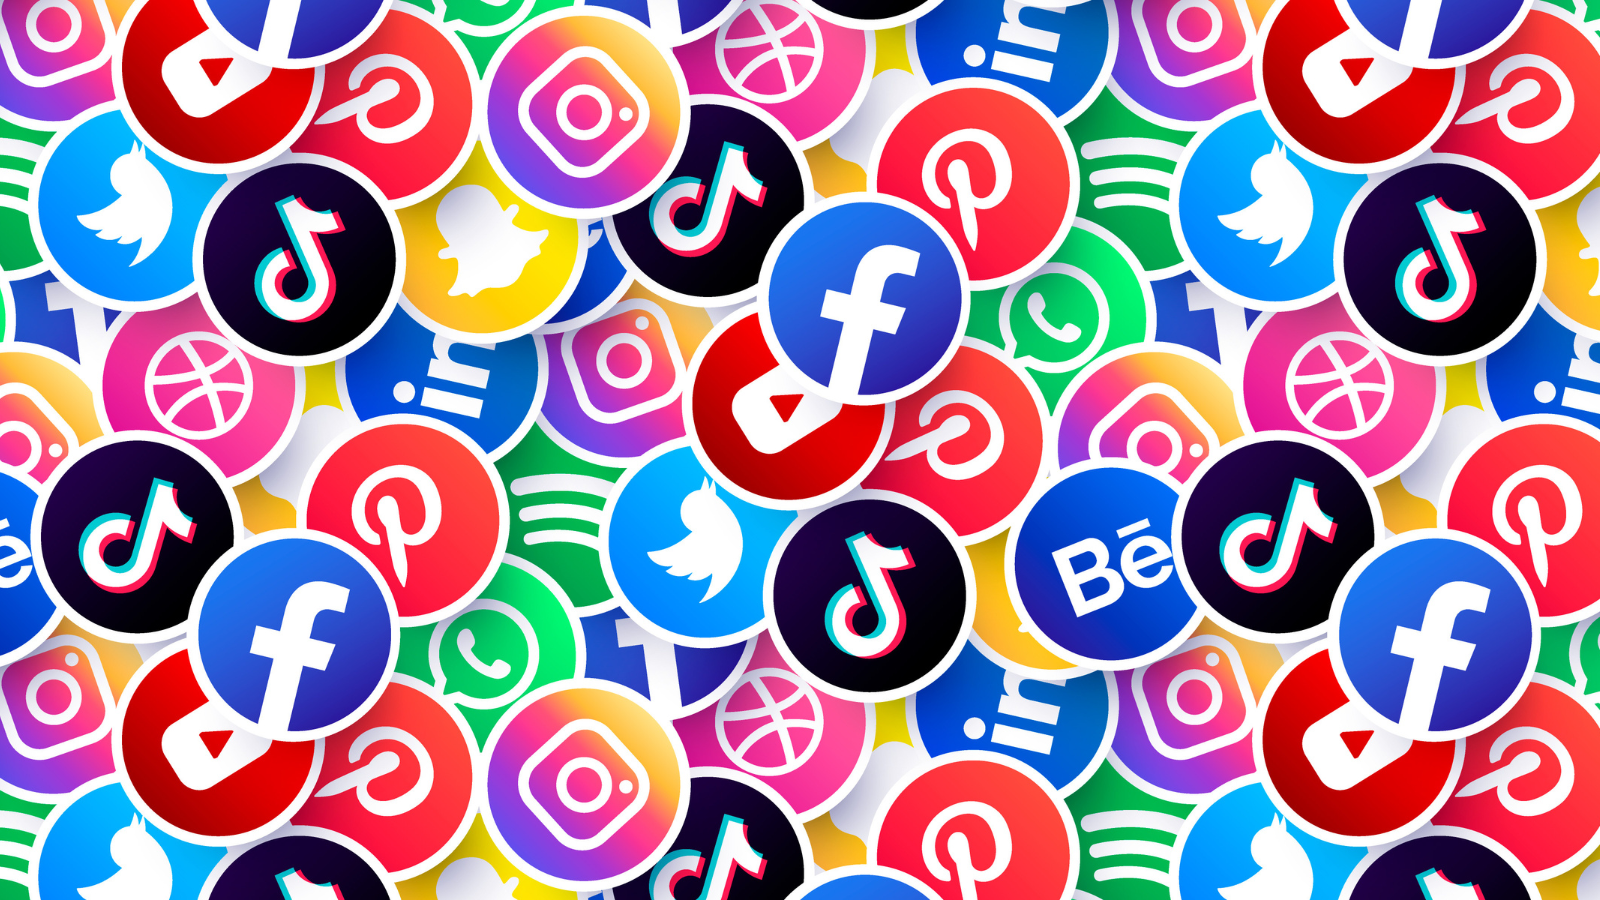 social-media-myths-all-platforms